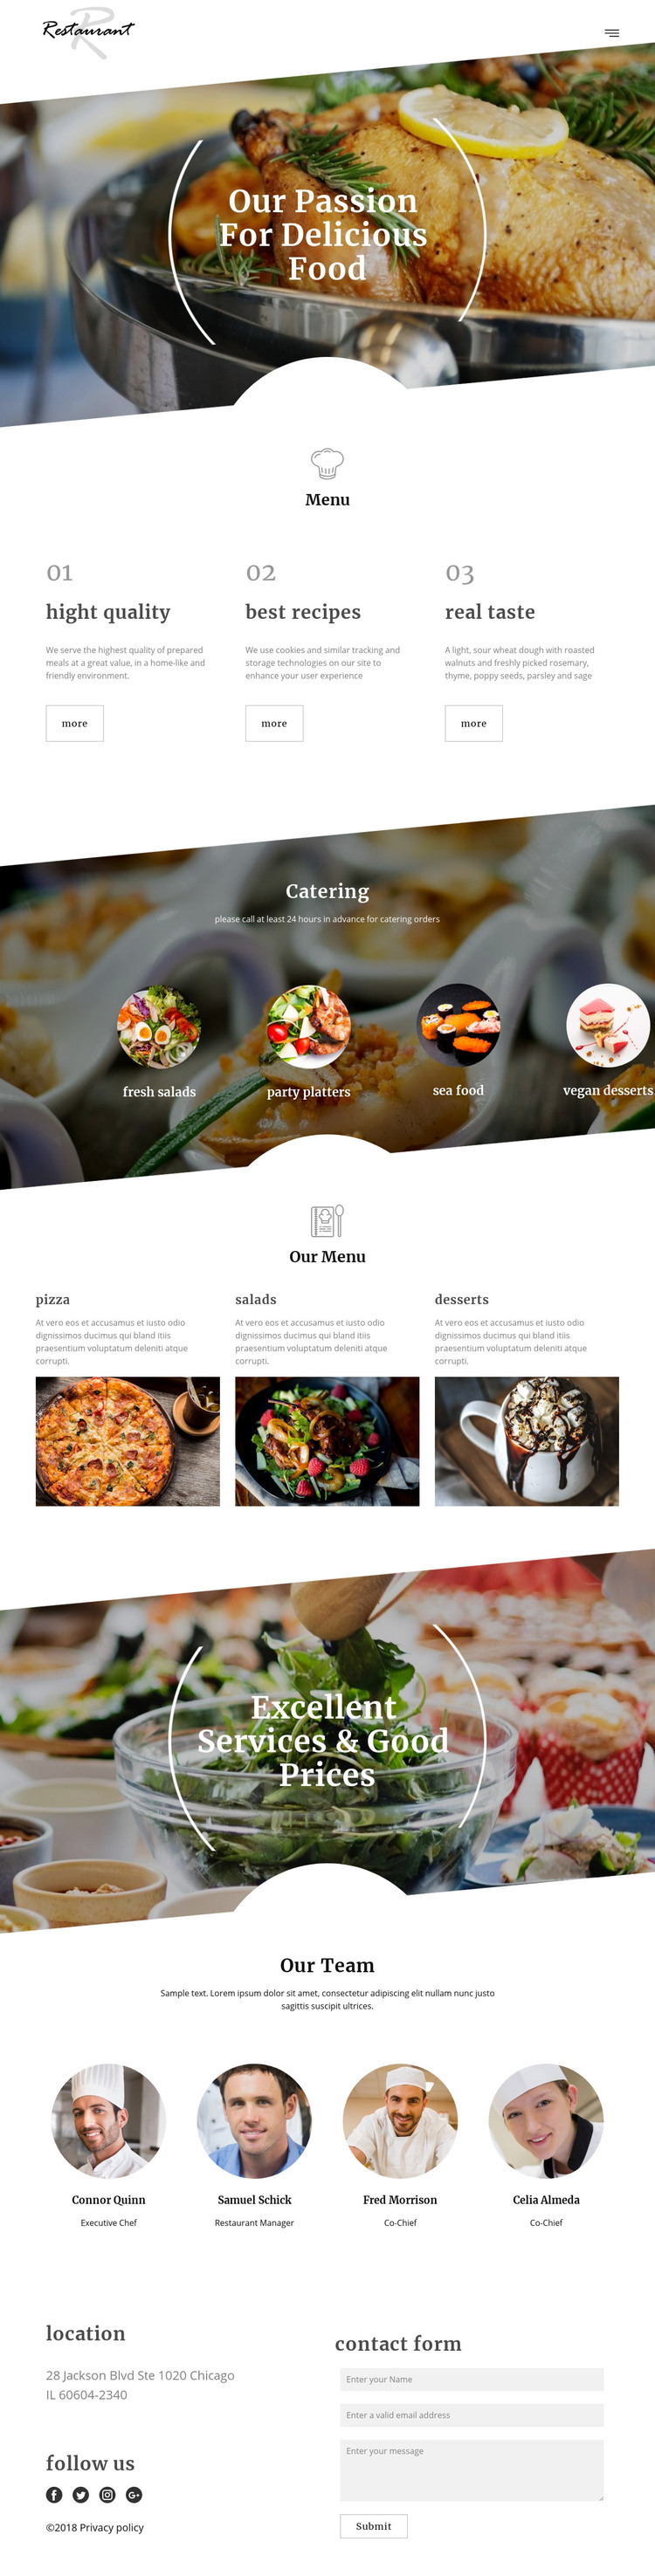 Executive chef recipes Homepage Design